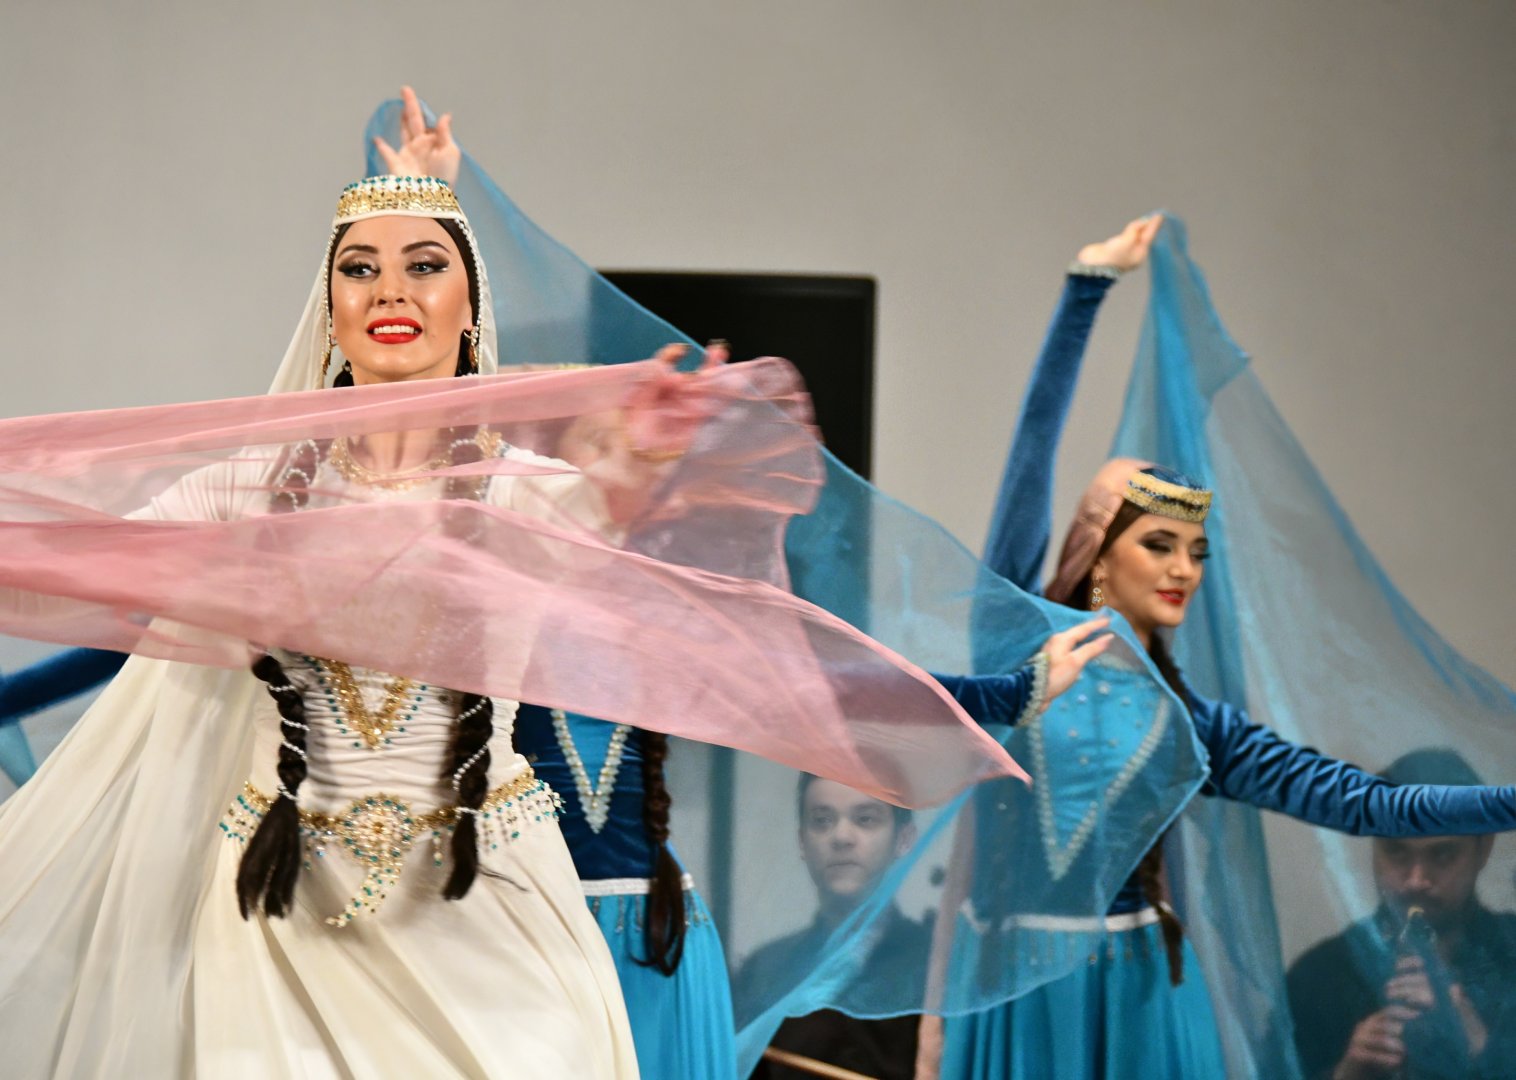 Прекрасная музыка и грациозные движения - Азербайджанский государственный ансамбль танца выступил с концертом (ФОТО/ВИДЕО)